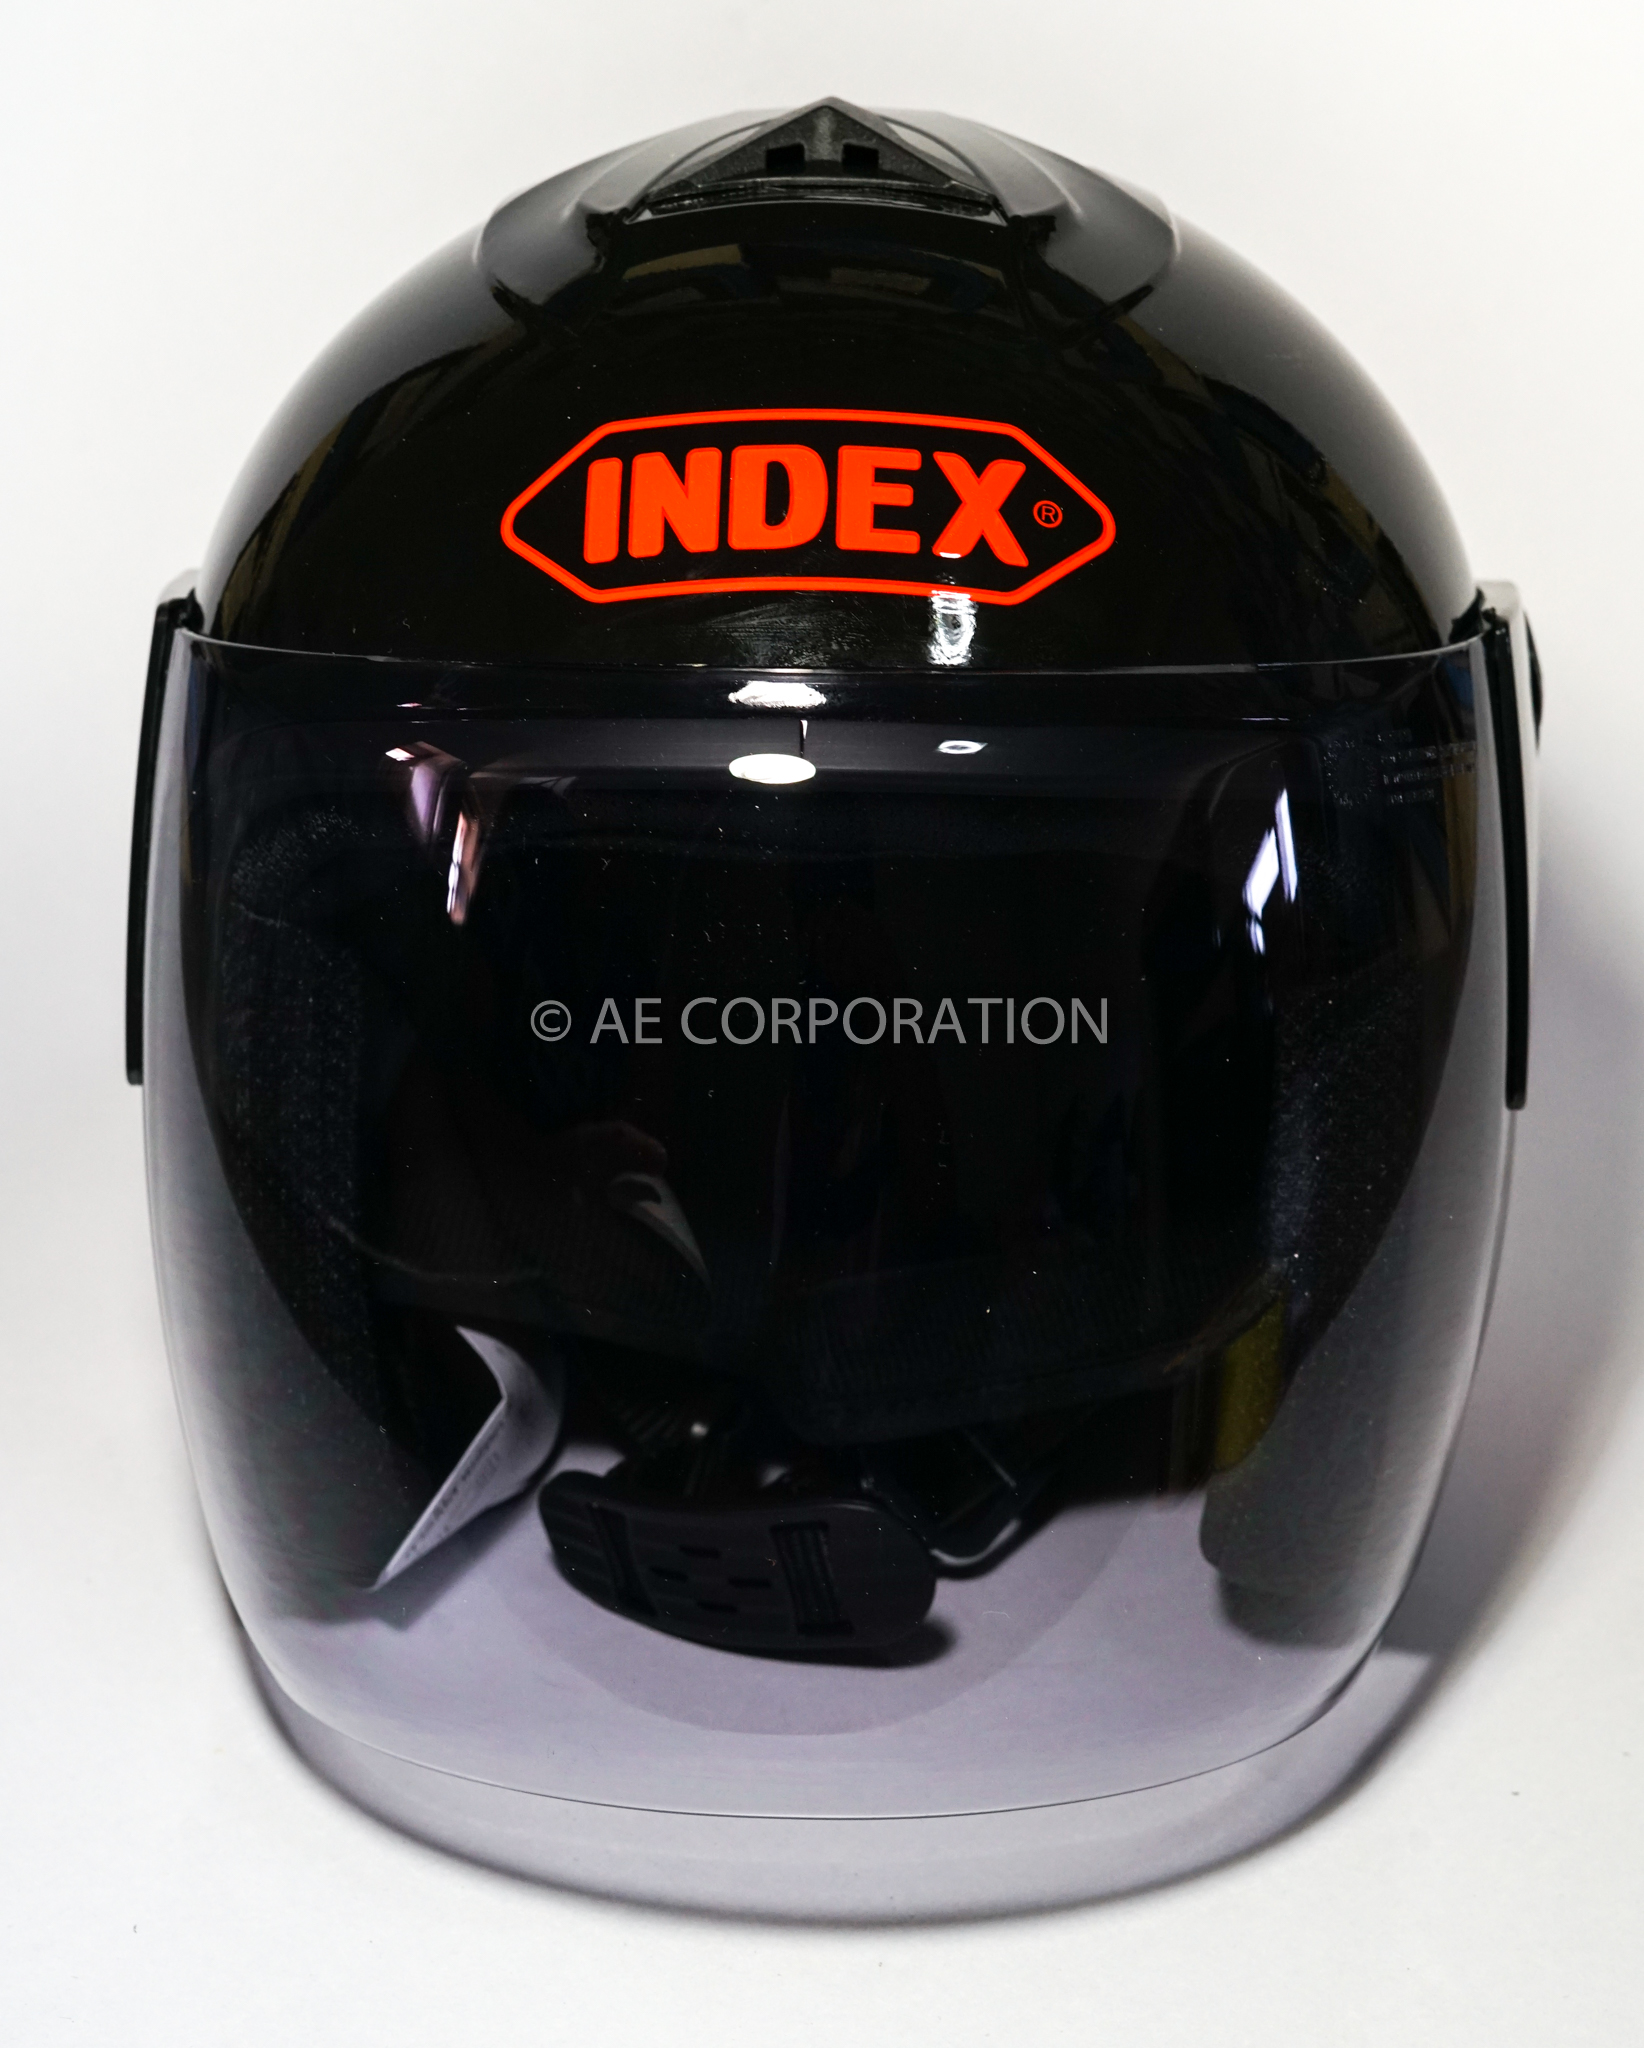 ภาพที่ให้รายละเอียดเกี่ยวกับ หมวกกันน็อค INDEX DUNK NEW หมวกกันน็อค ของแท้100% ไซต์L สีดำเงา 300IQ Racing